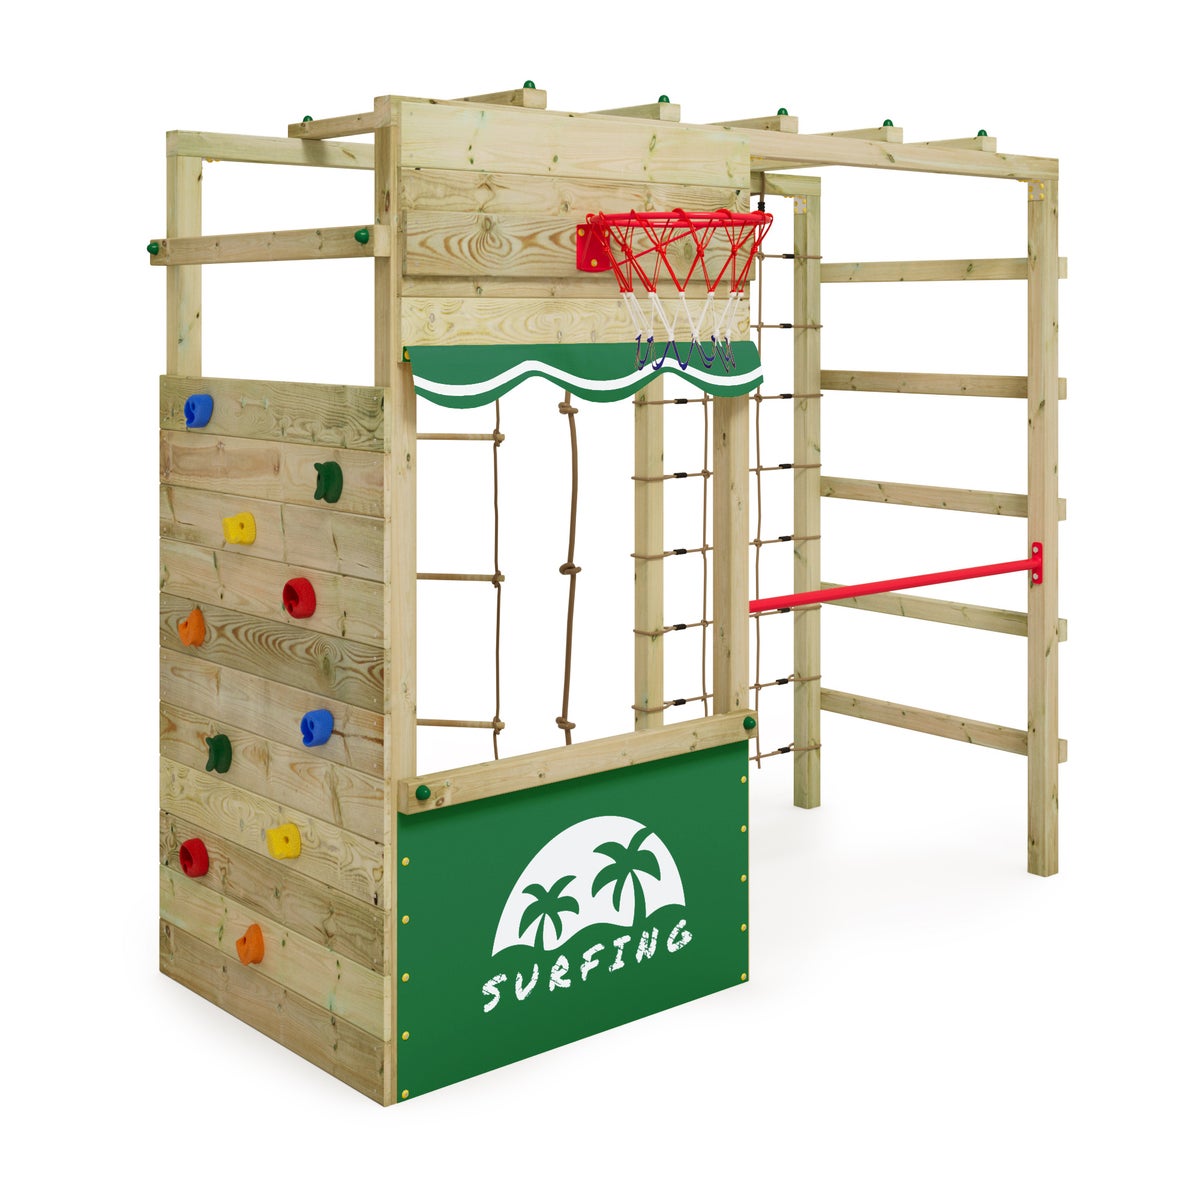 WICKEY Klettergerüst Spielturm Smart Action Gartenspielgerät mit Kletterwand und Spiel-Zubehör - grün